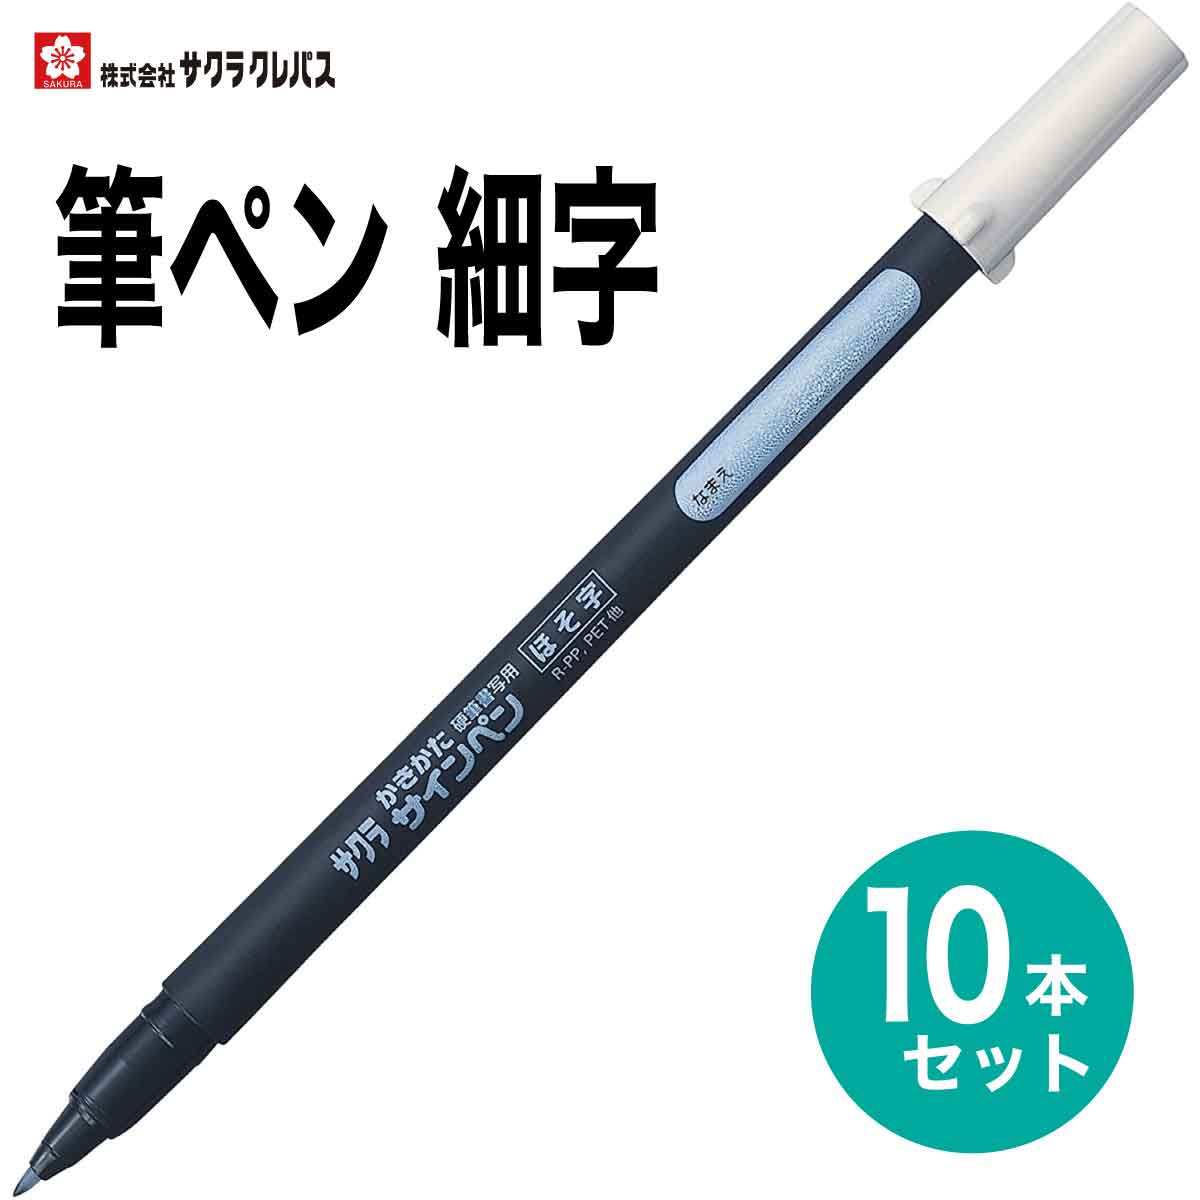 サクラクレパス 10本セット 筆ペン かきかた サインペン 細字 FK-S 黒 硬筆書写用 書き初め 書道 年賀状 SAKURA Calligraphy Brush pen